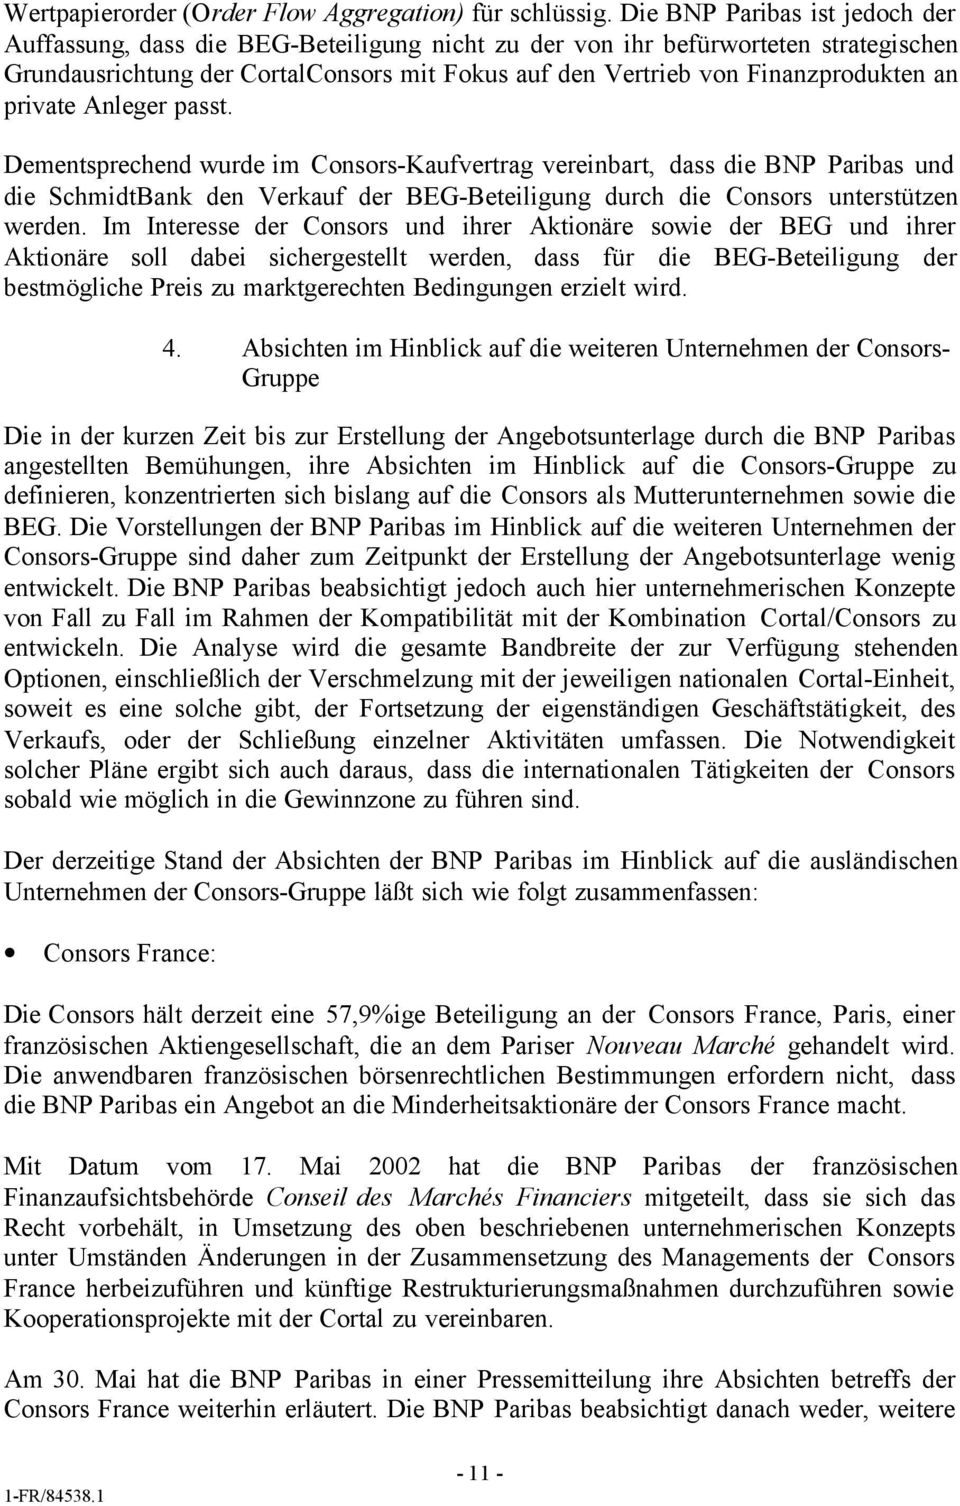 an private Anleger passt. Dementsprechend wurde im Consors-Kaufvertrag vereinbart, dass die BNP Paribas und die SchmidtBank den Verkauf der BEG-Beteiligung durch die Consors unterstützen werden.